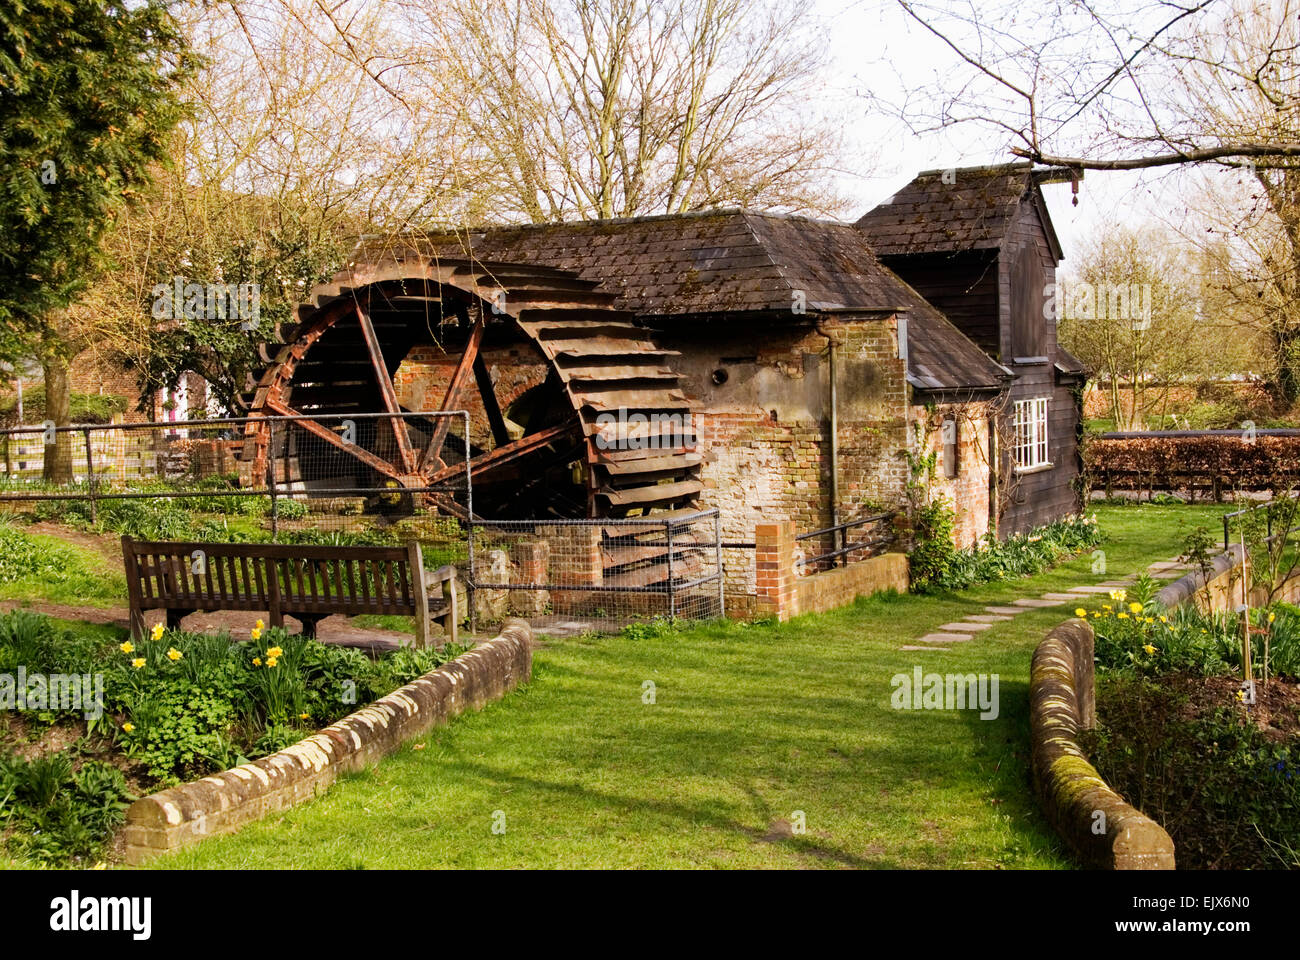 Bucks - übertrieben High Wycombe - Pann Mill (wiederhergestellt) Misbourne Kreide Stream - Wasserrad - alten mellow Mauerwerk - Garten-Szene Stockfoto